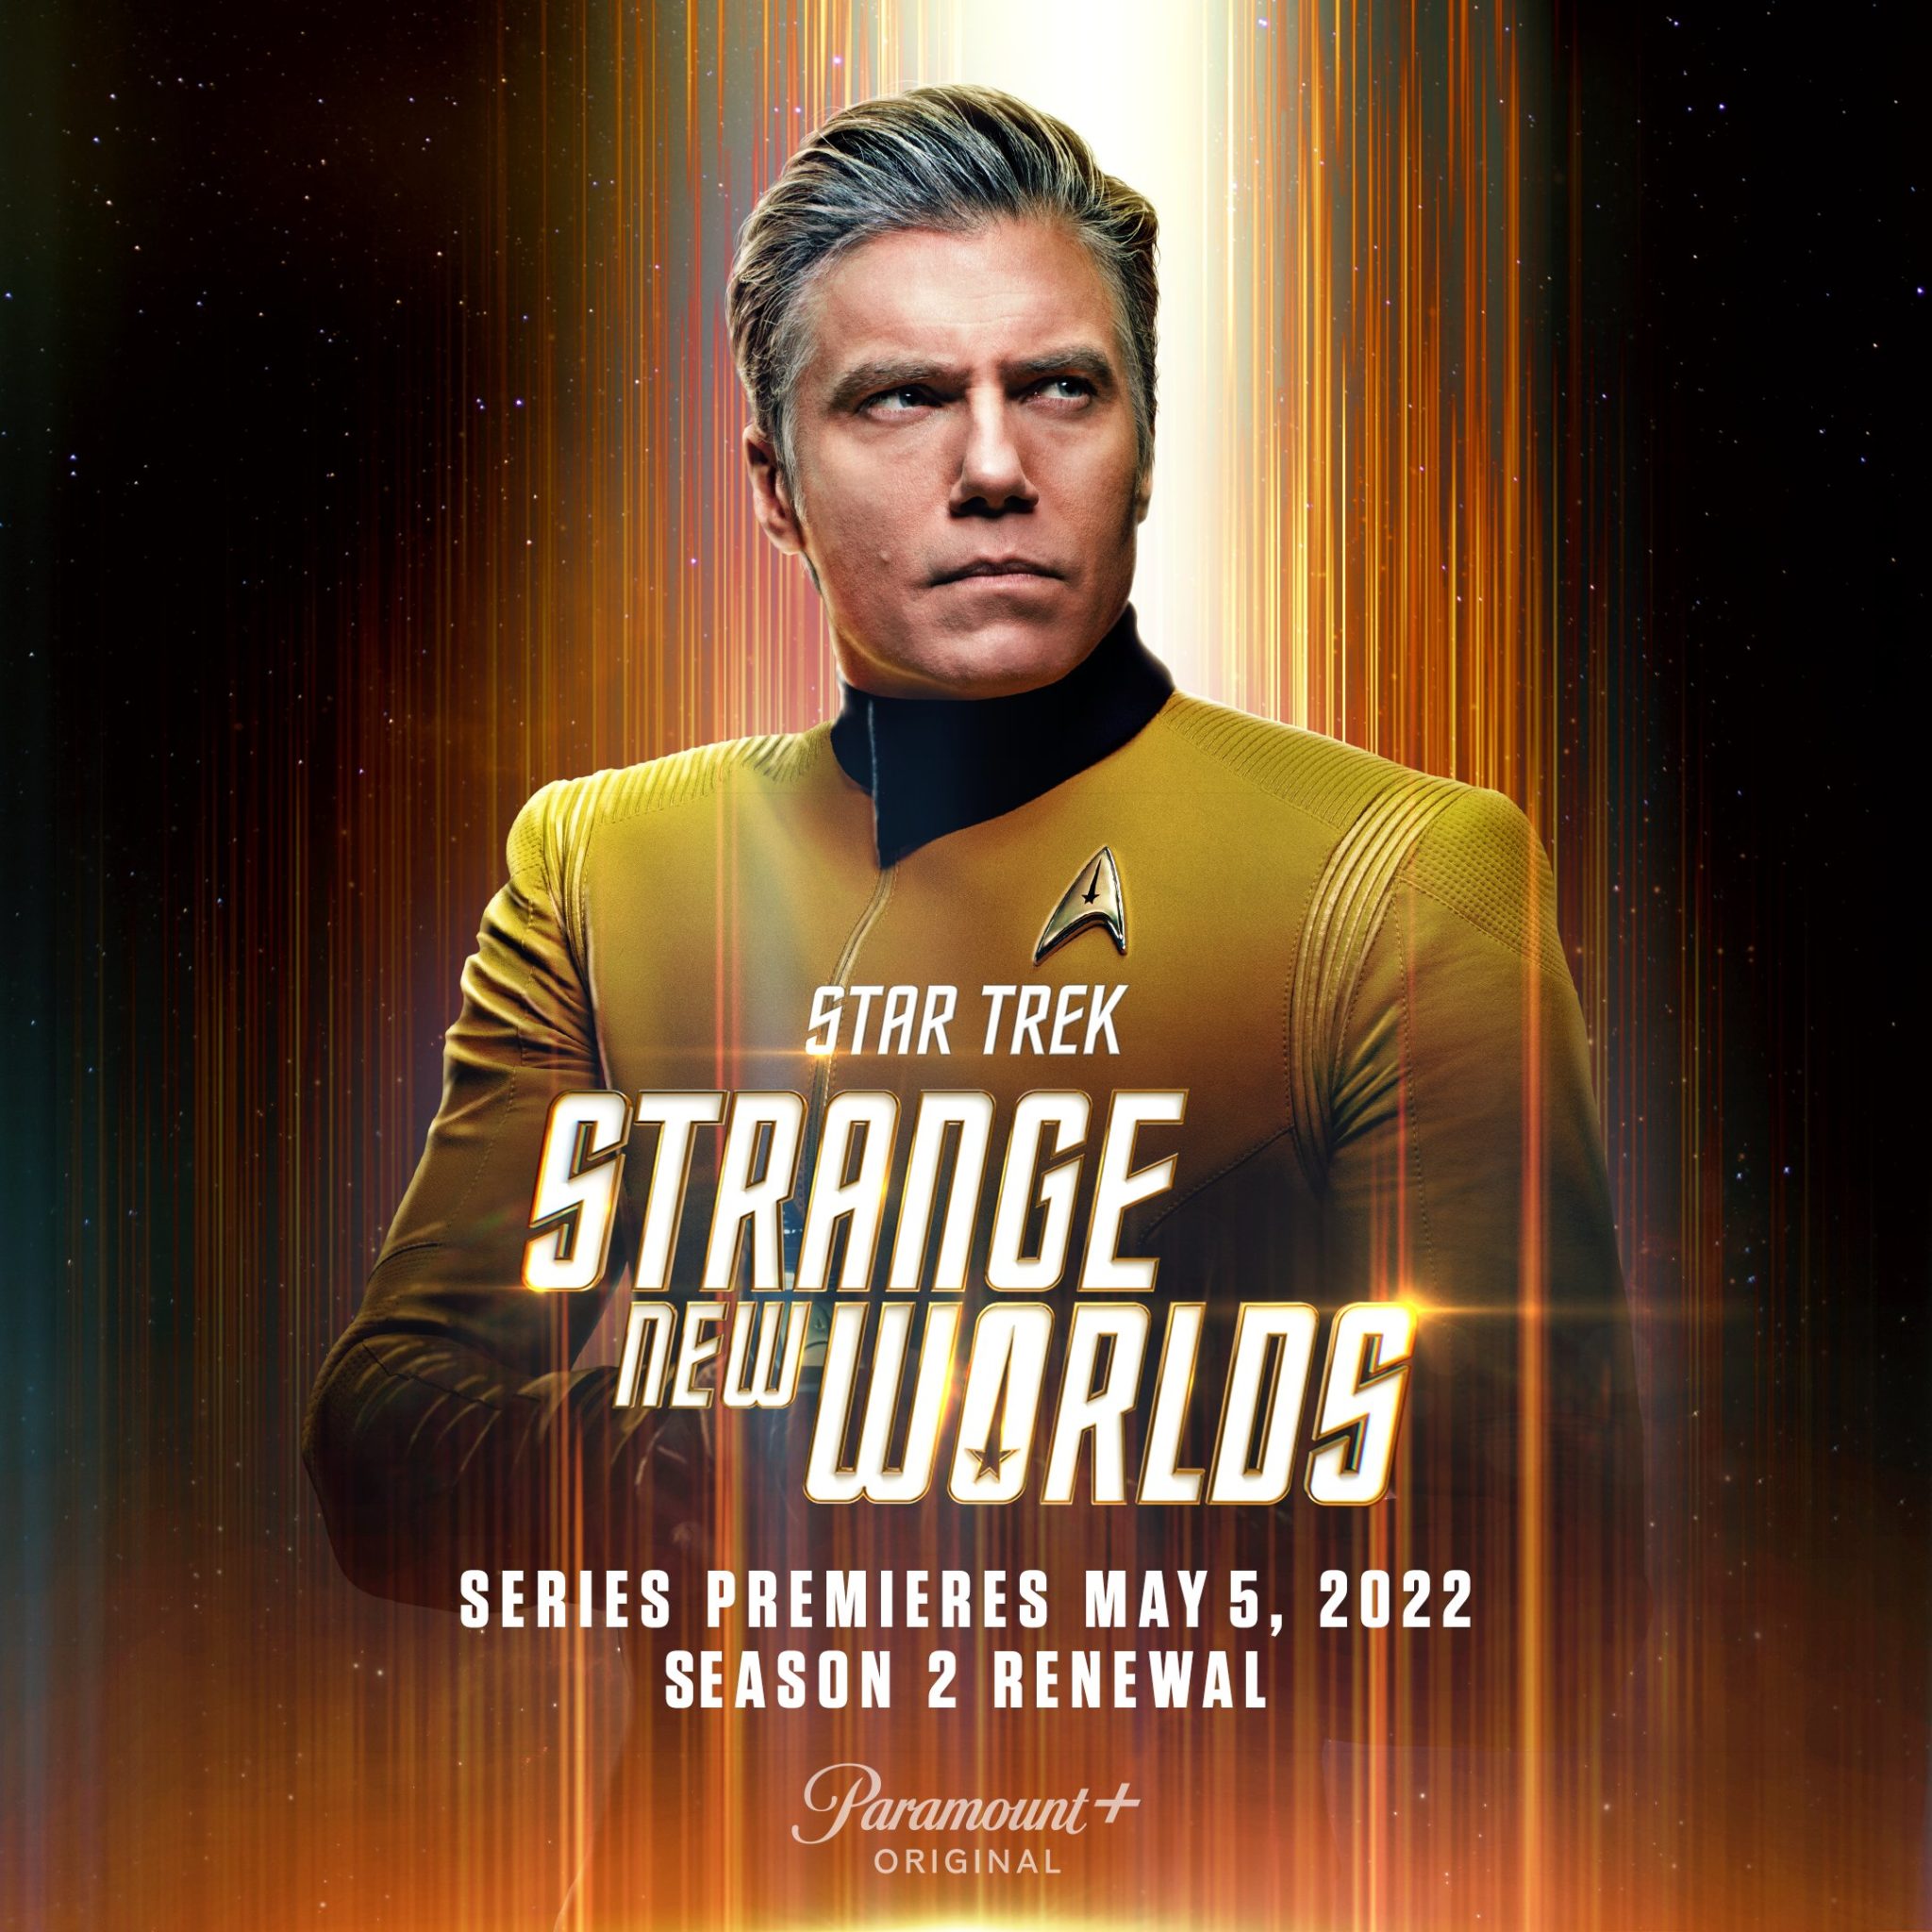 star trek series premiere dates 2023